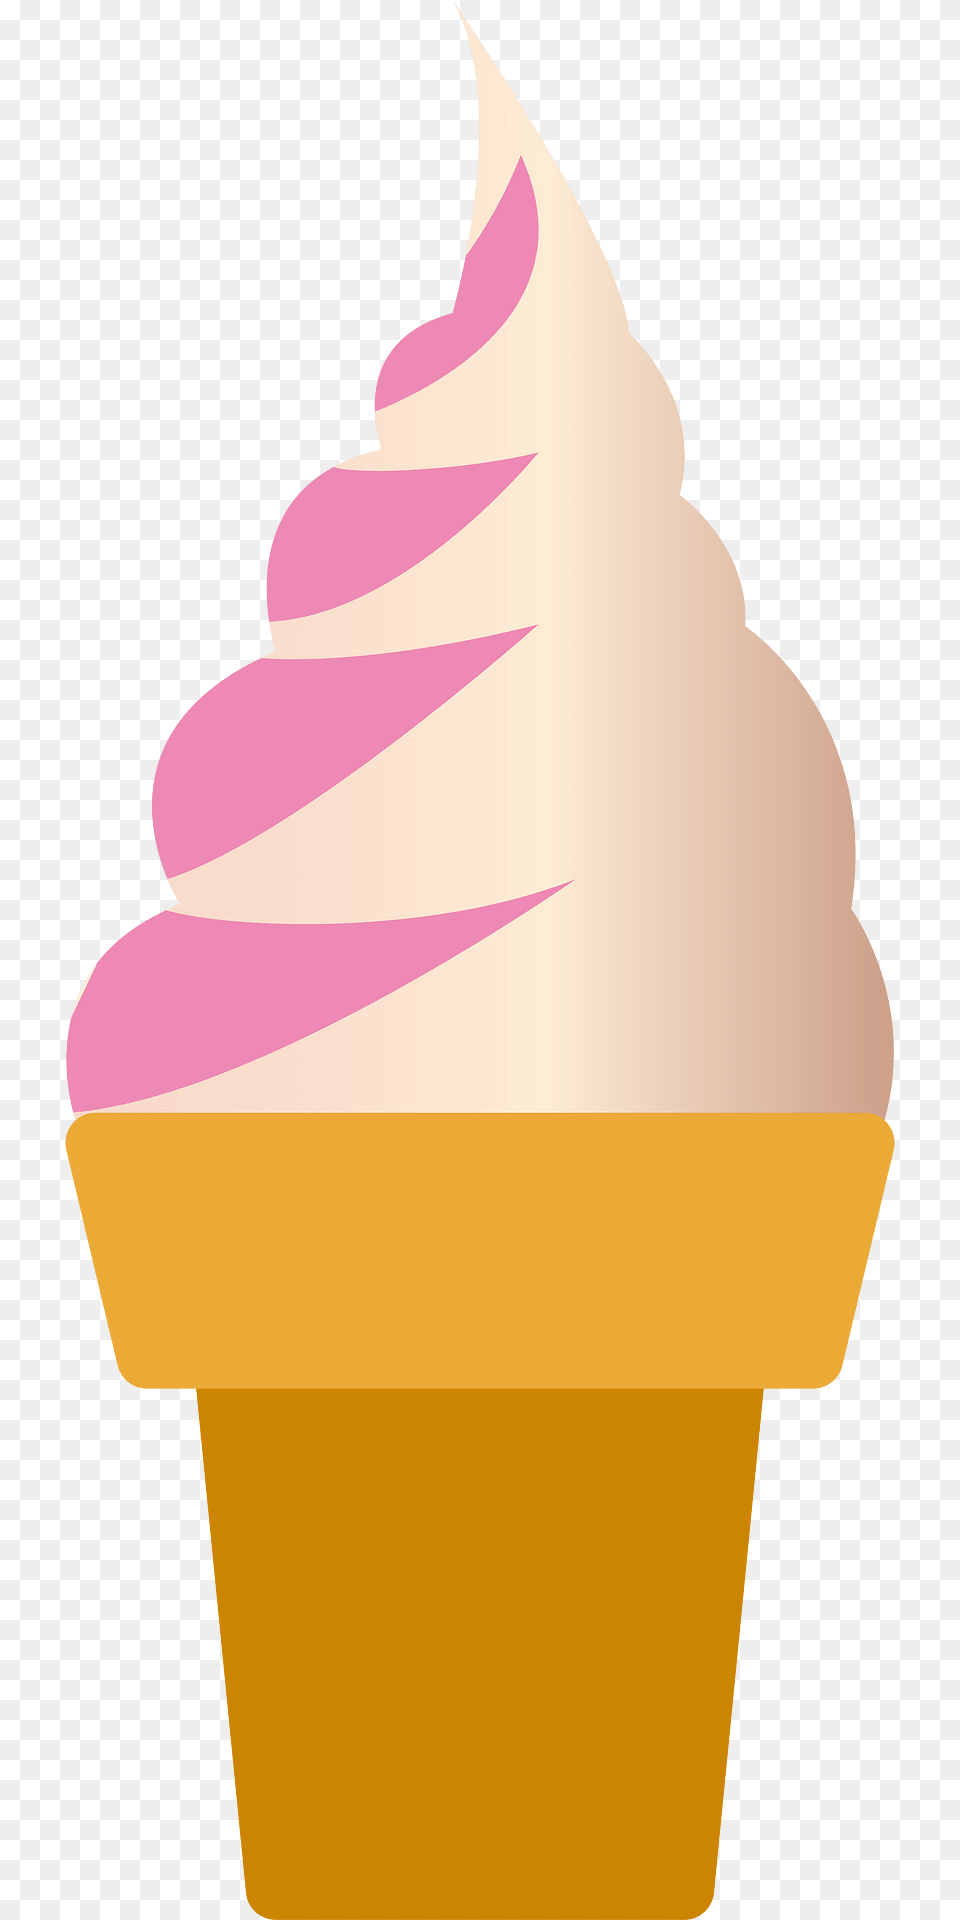 Ice Cream Cone Clipart, Dessert, Food, Ice Cream, Cake Png